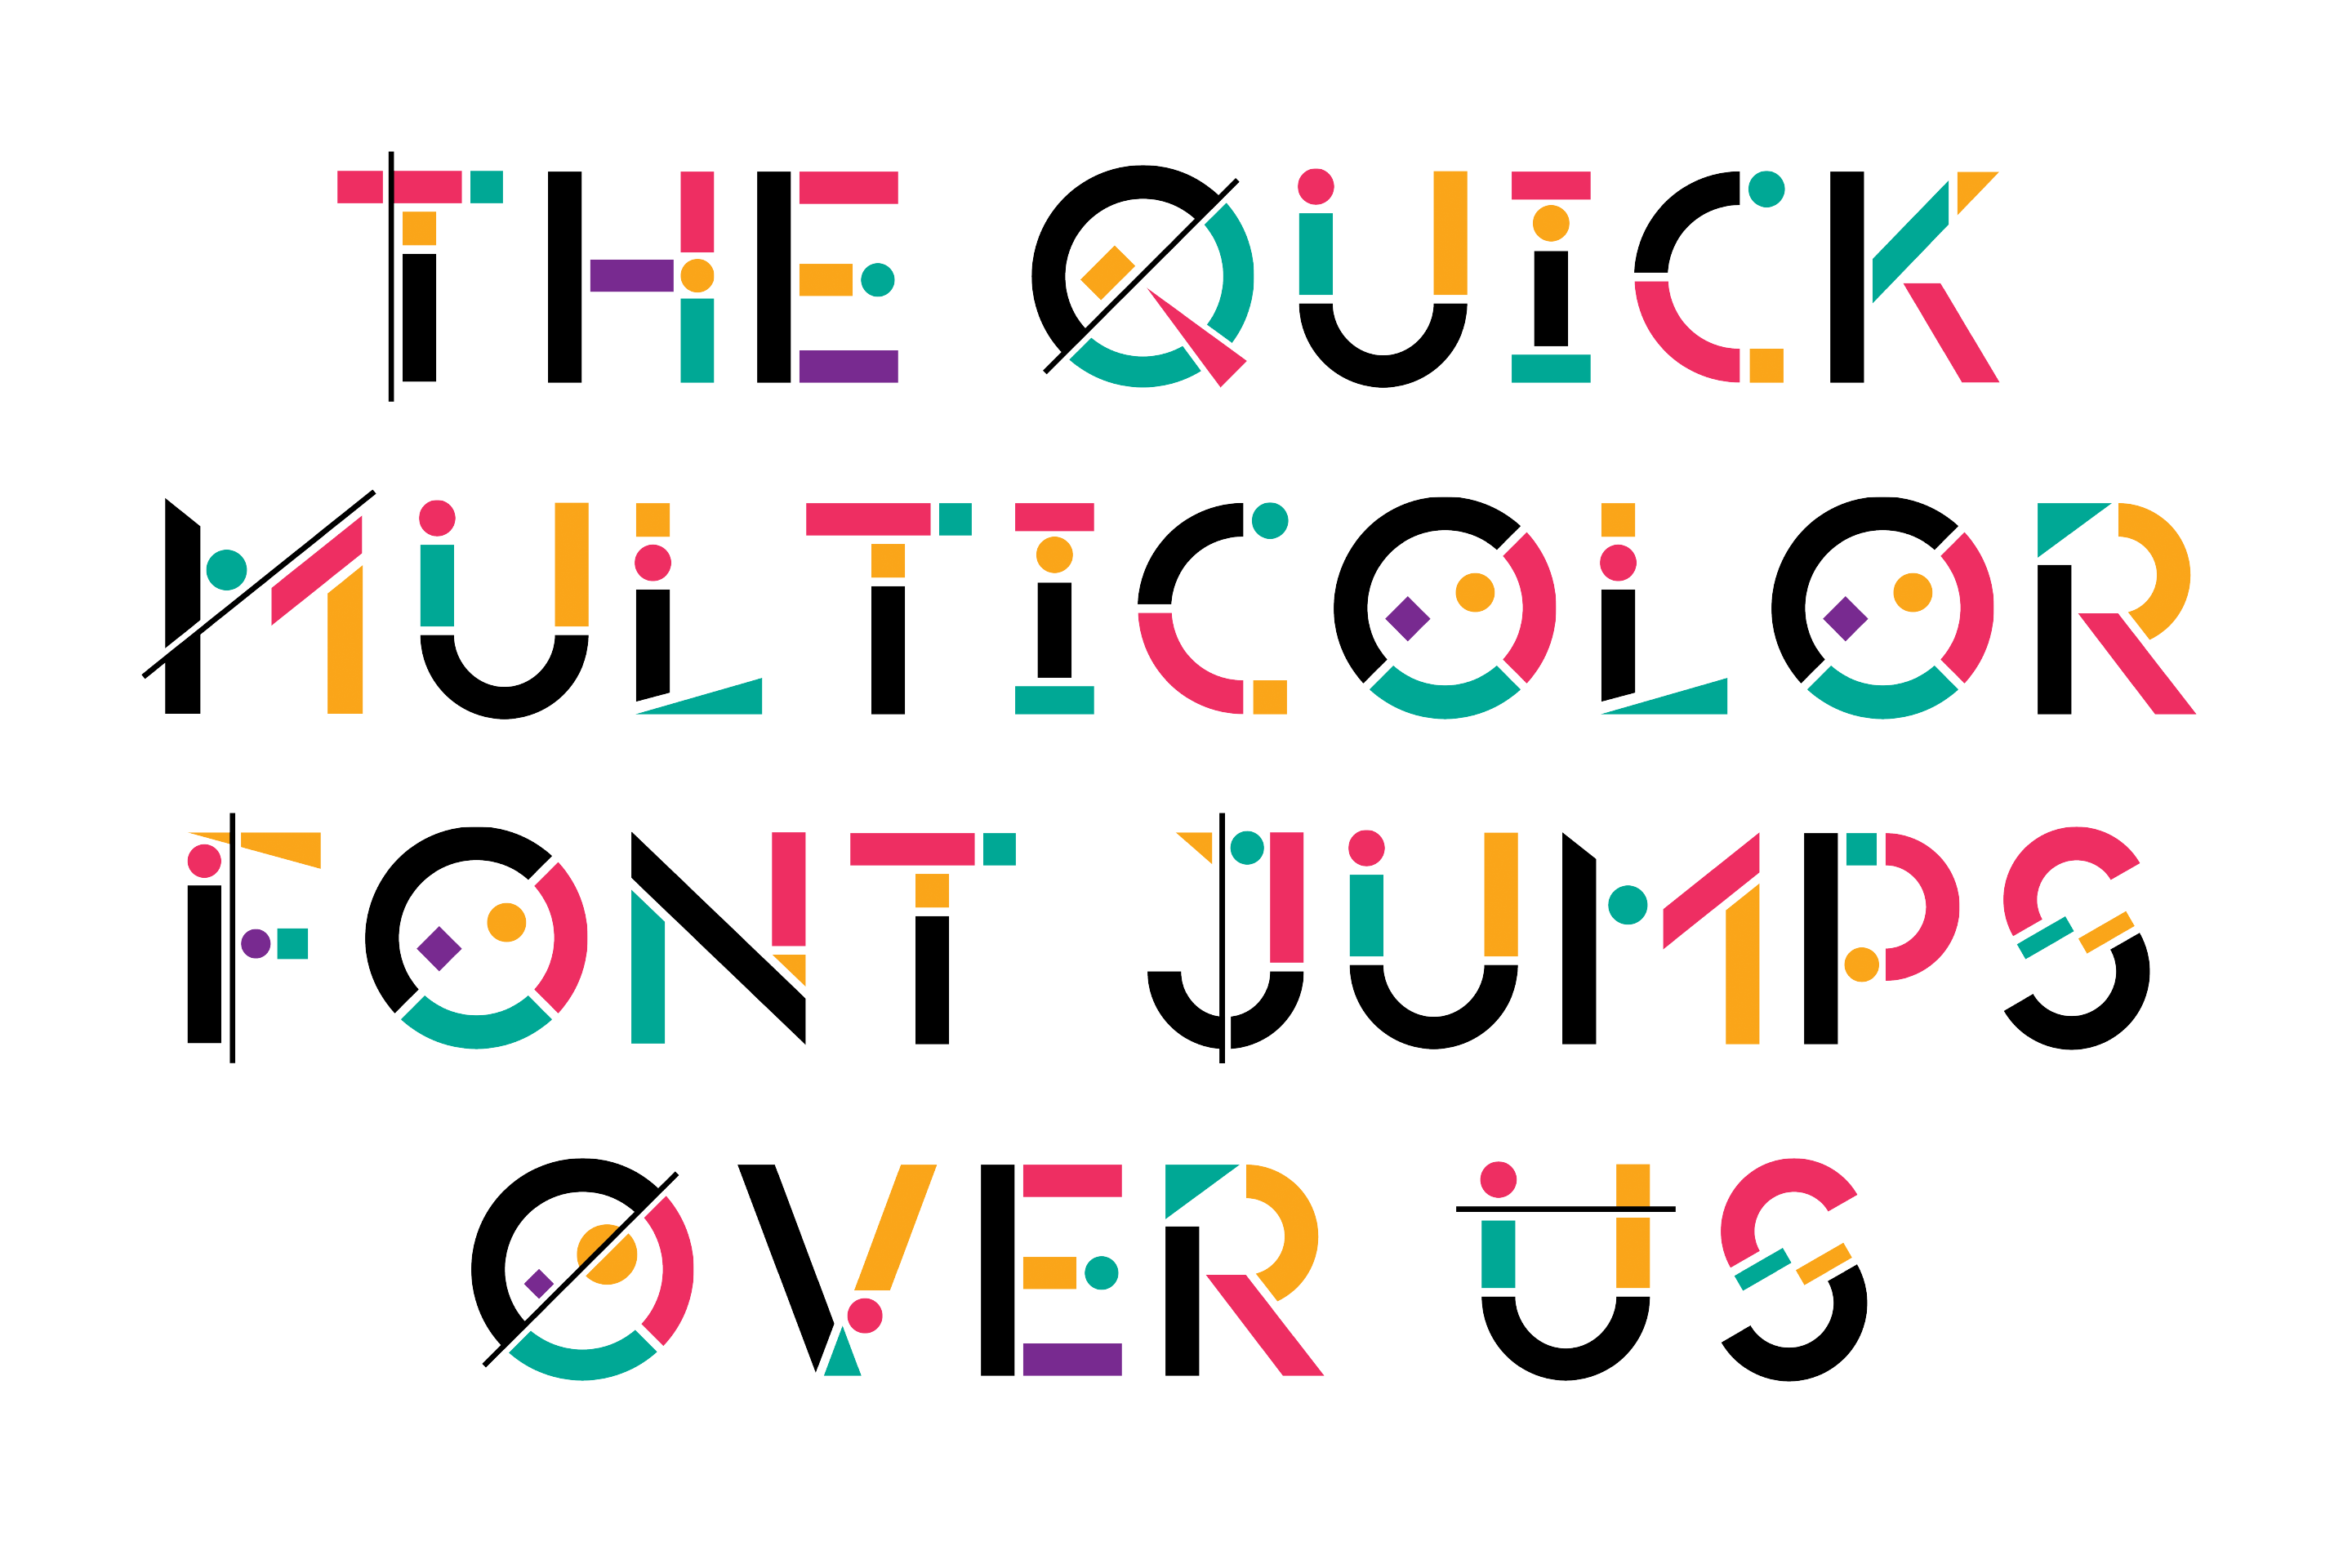 哪知道还有更惊喜的,这两天,adobe与fontself的合作发布了5款彩色字体